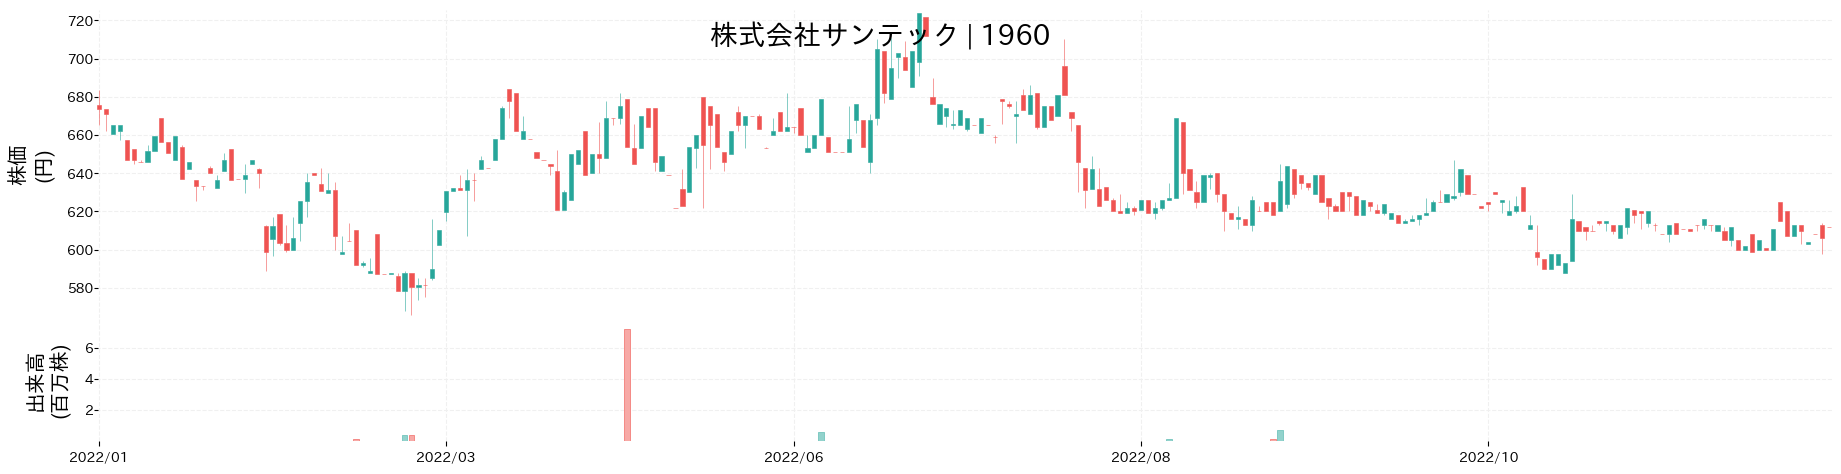 サンテックの株価推移(2022)